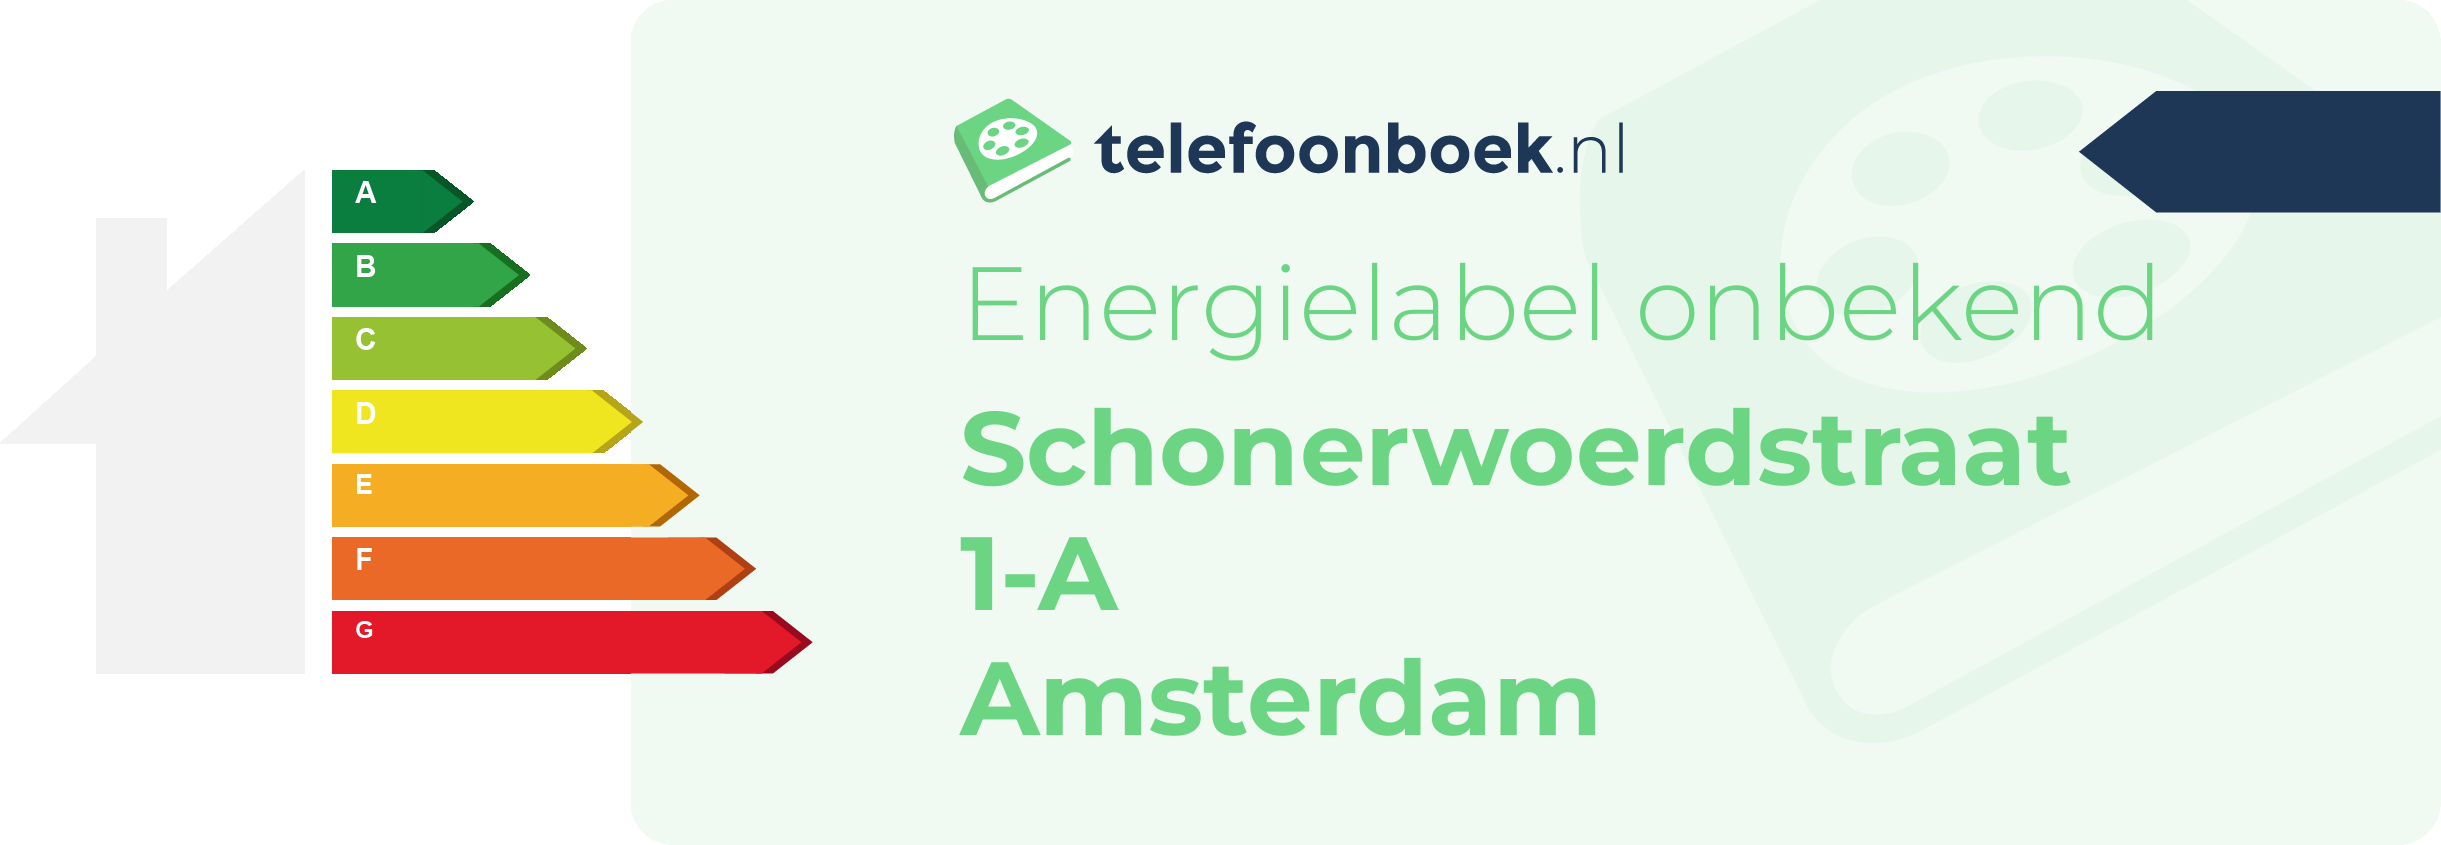 Energielabel Schonerwoerdstraat 1-A Amsterdam